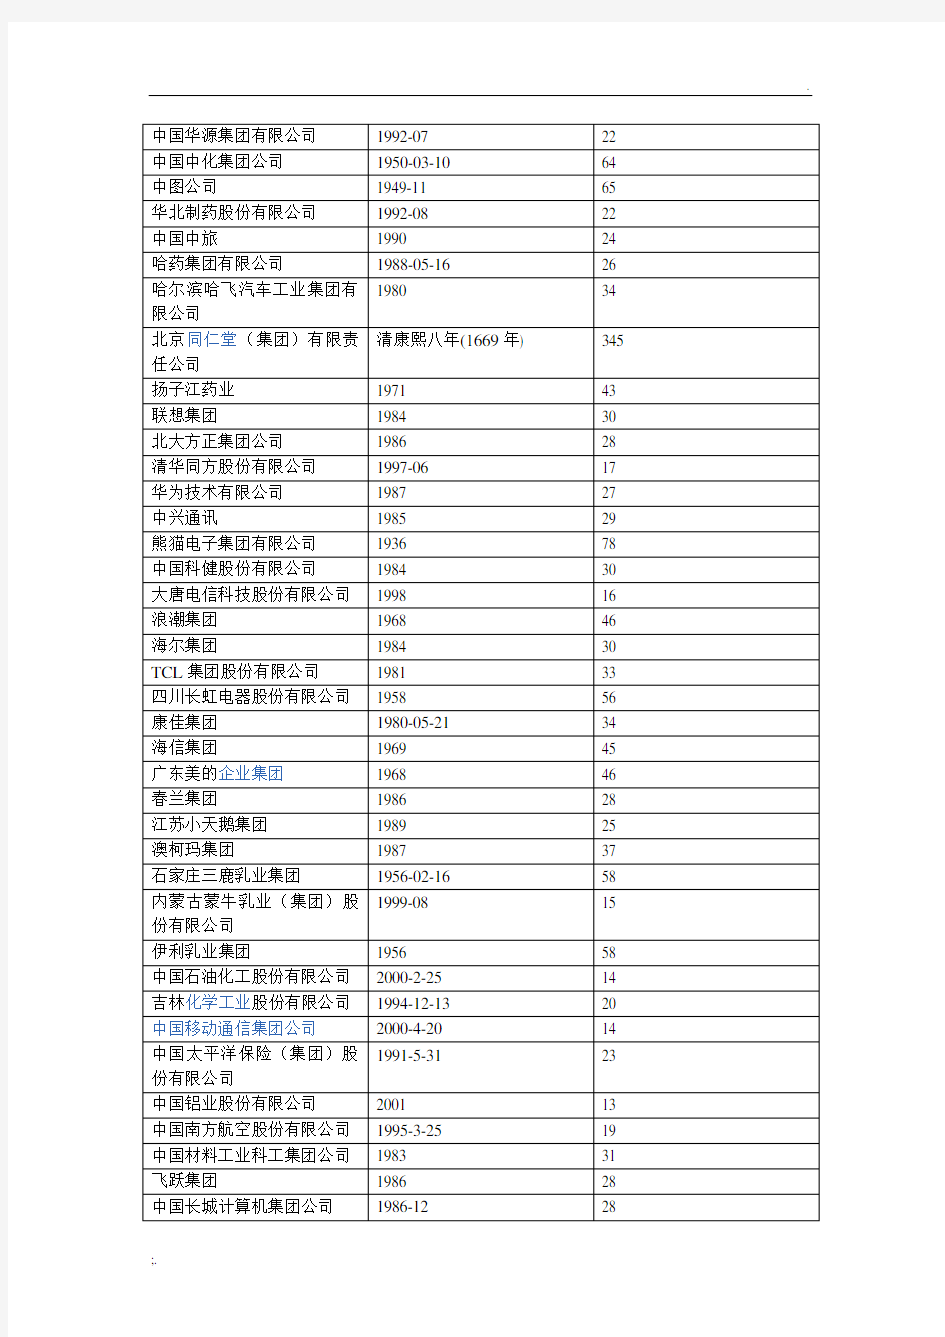 中国著名企业成立年限表